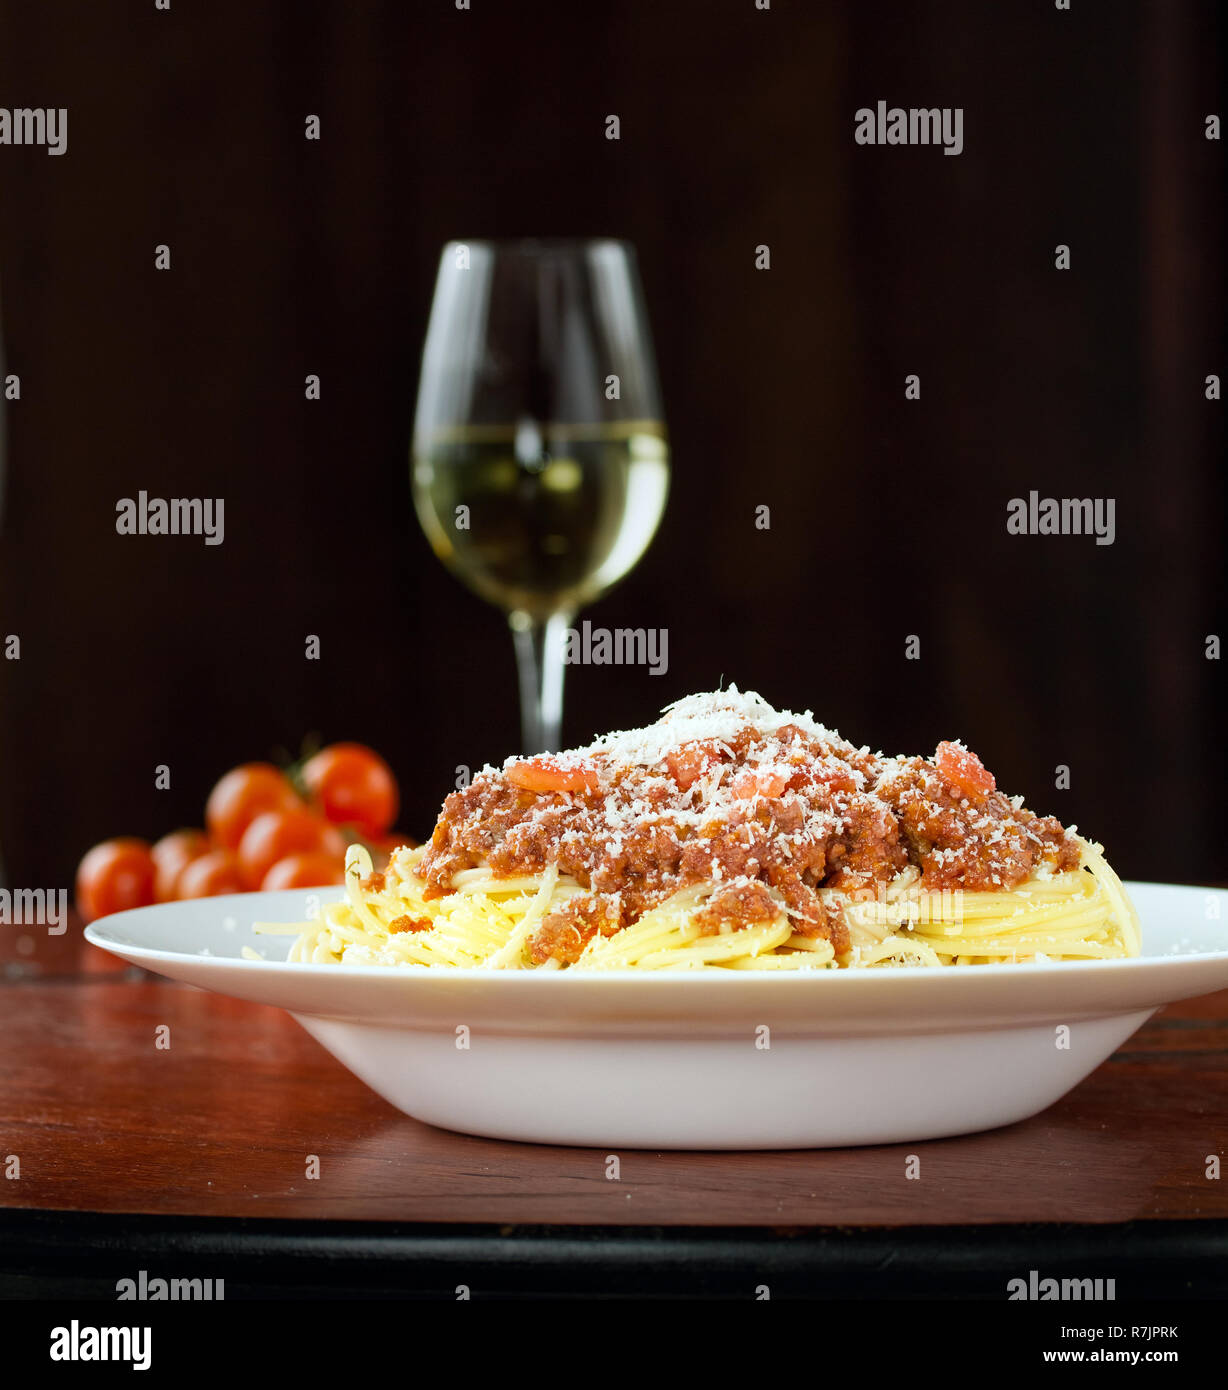 Italiano classico Spaghetti alla Bolognese nella finestra naturale luce sul pannello di legno Foto Stock